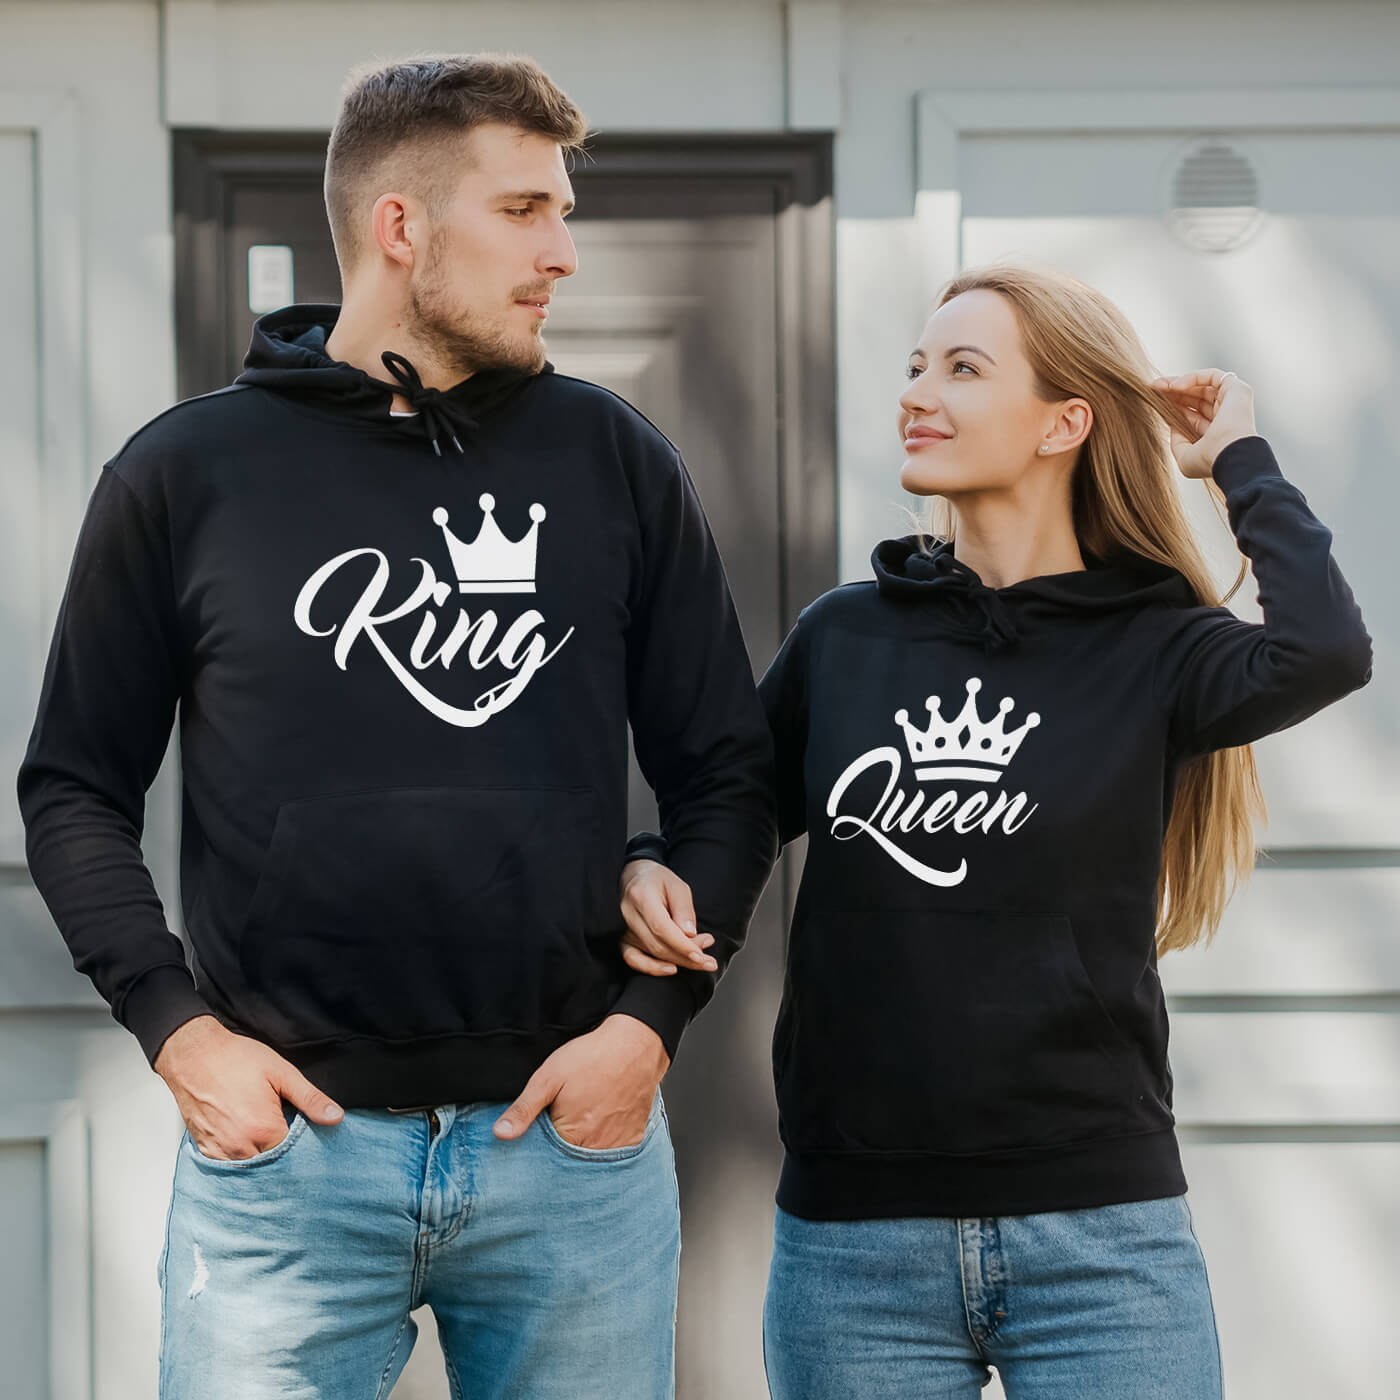 https://vivamake.de/wp-content/uploads/2020/11/black-couple-hoodies-with-print-king-and-queen.jpg